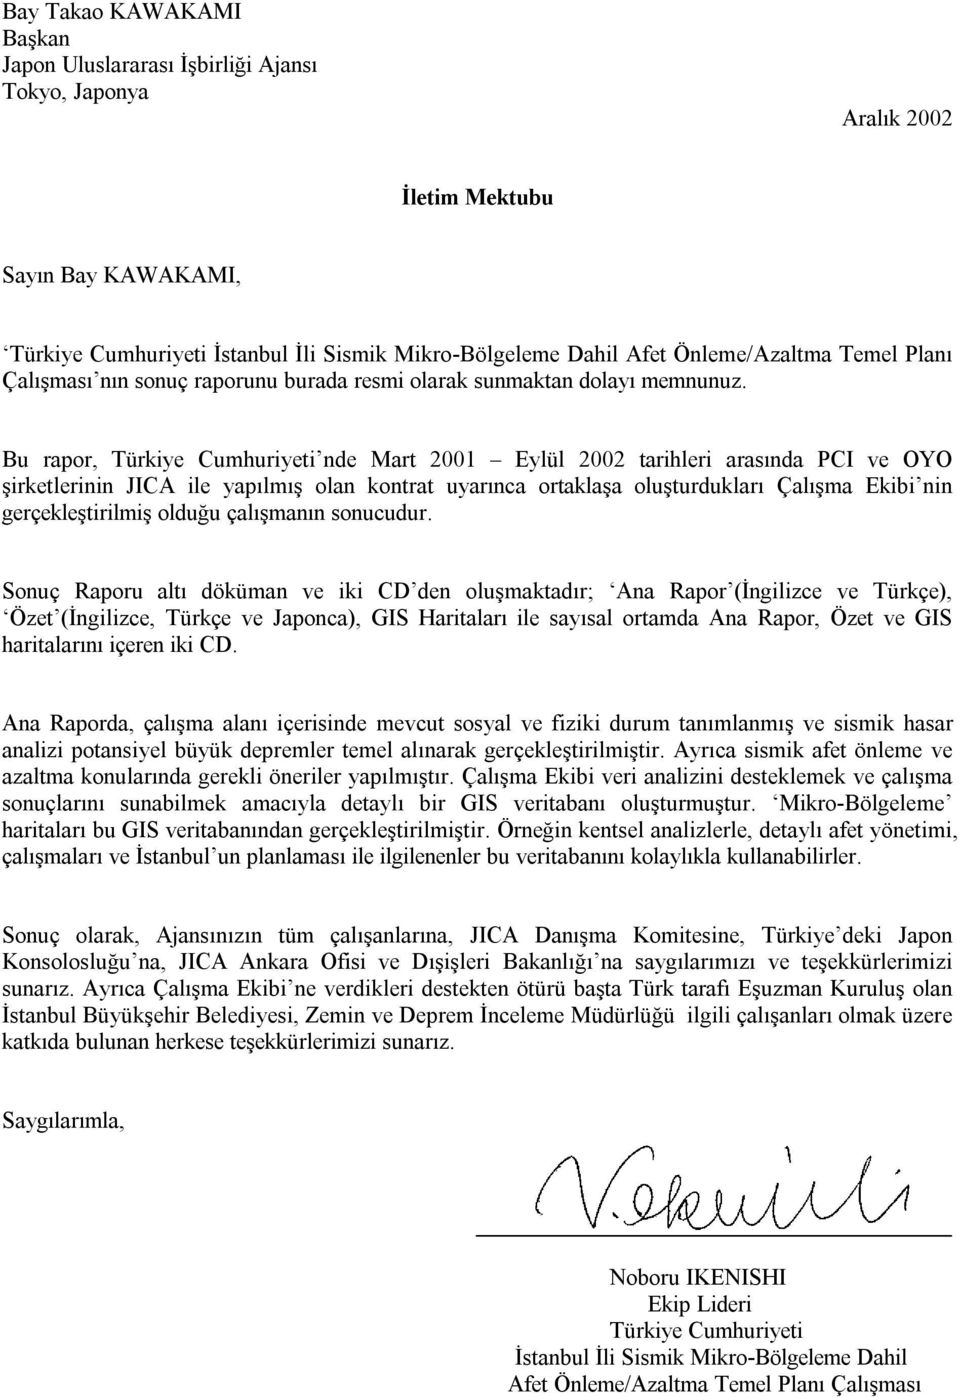 Bu rapor, Türkiye Cumhuriyeti nde Mart 2001 Eylül 2002 tarihleri arasında PCI ve OYO şirketlerinin JICA ile yapılmış olan kontrat uyarınca ortaklaşa oluşturdukları Çalışma Ekibi nin gerçekleştirilmiş